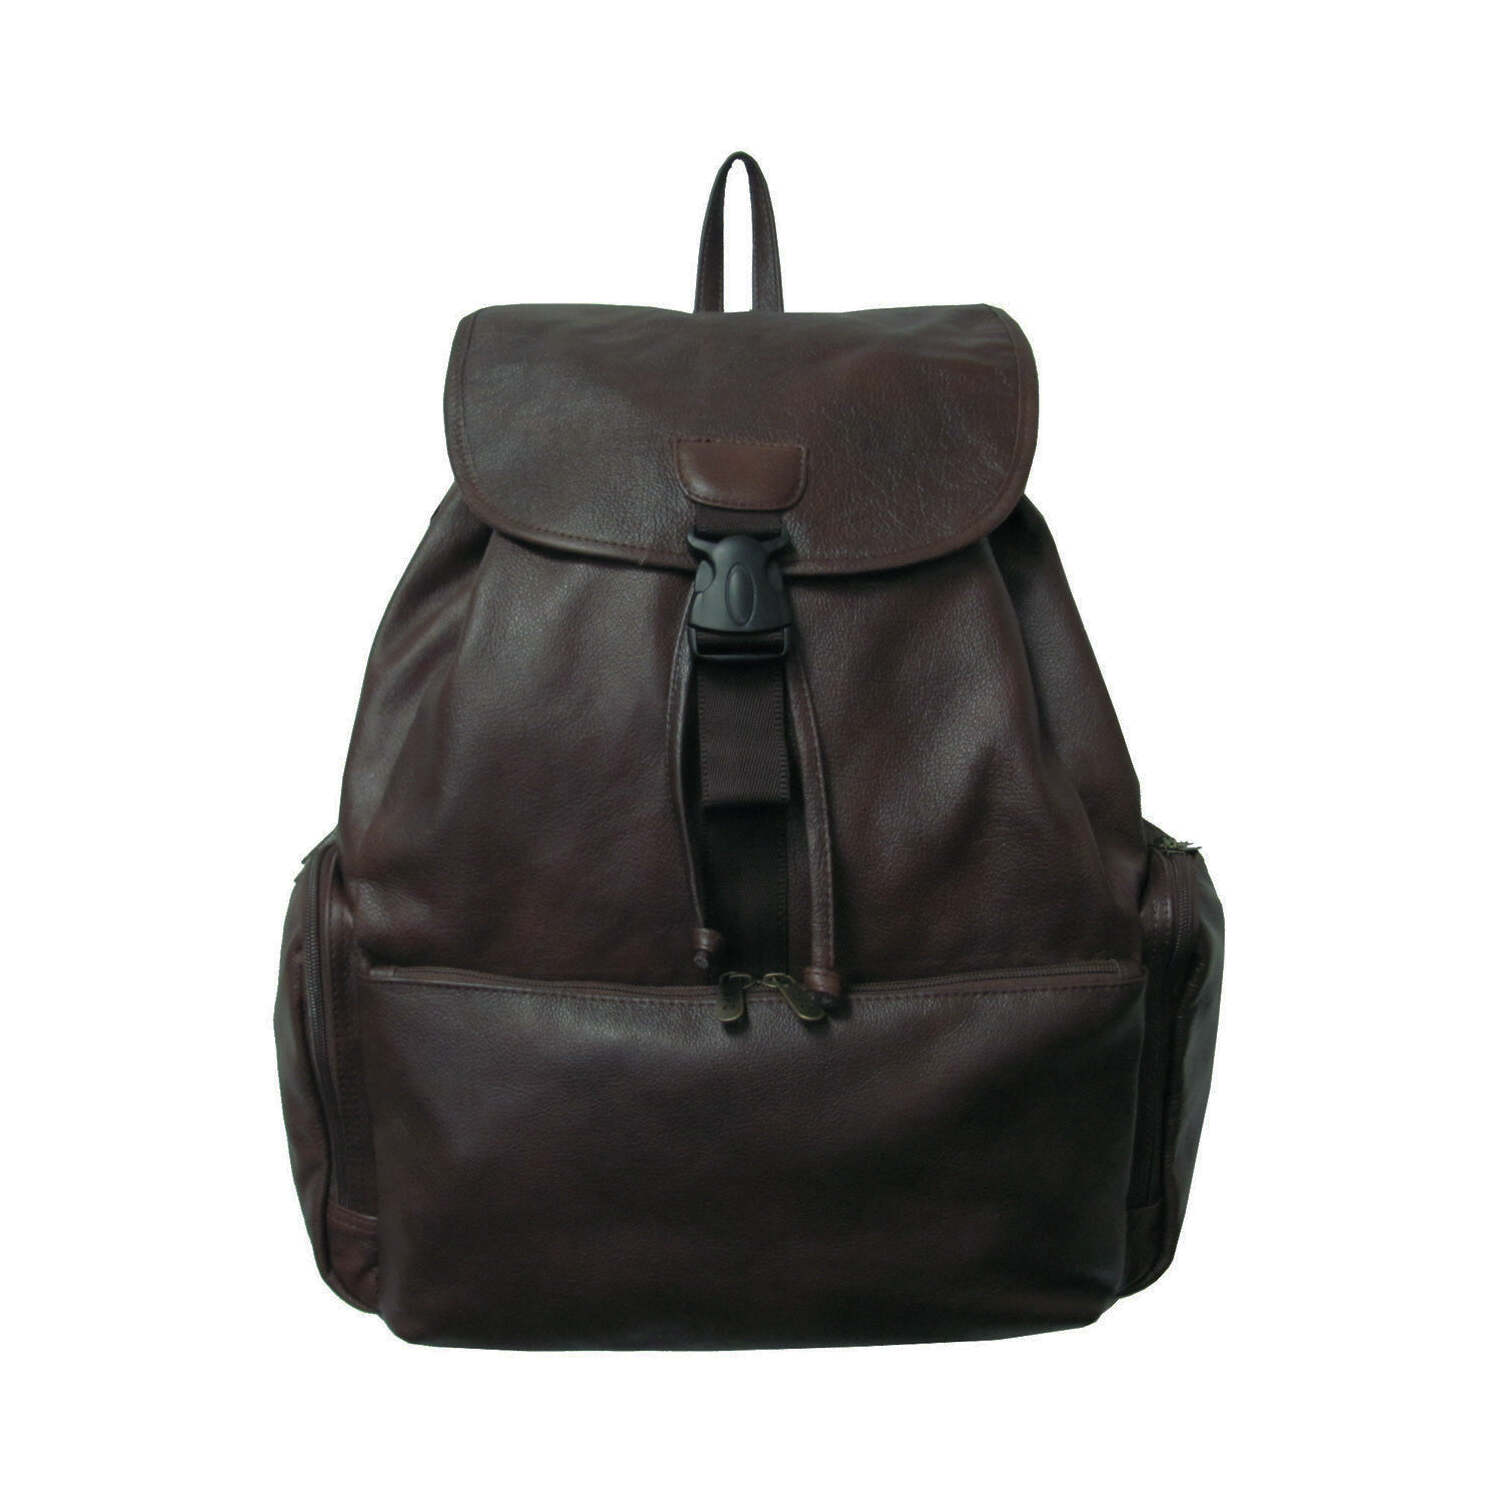 AmeriLeather Jumbo Leather Backpack - image 3 of 7